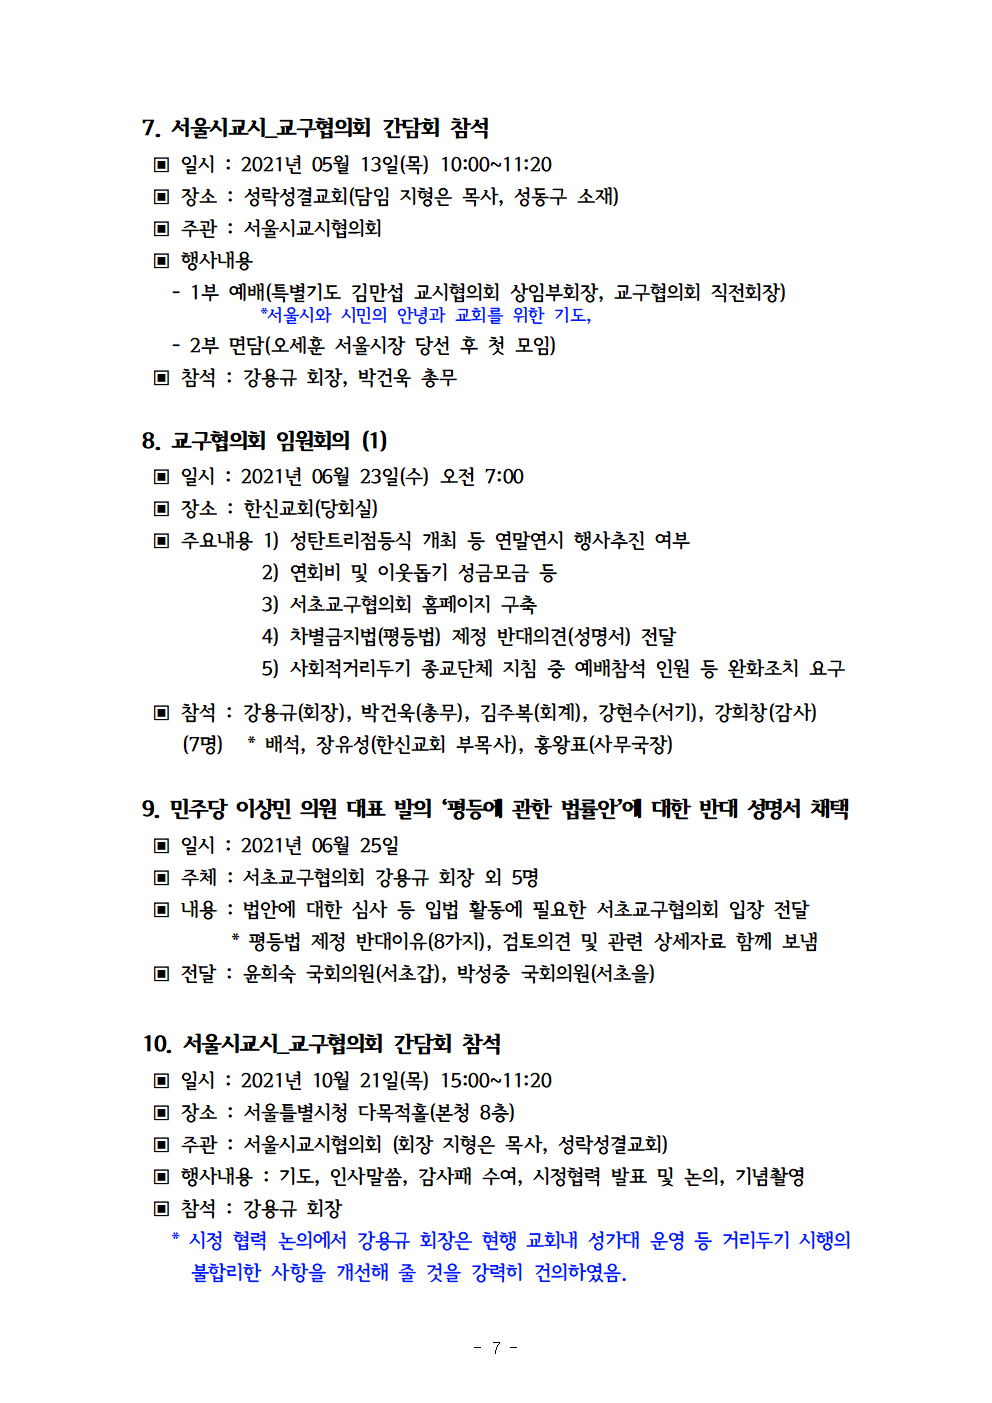 2021회기 서초교구협의회 정기총회자료(12.17)_홈피용008.png